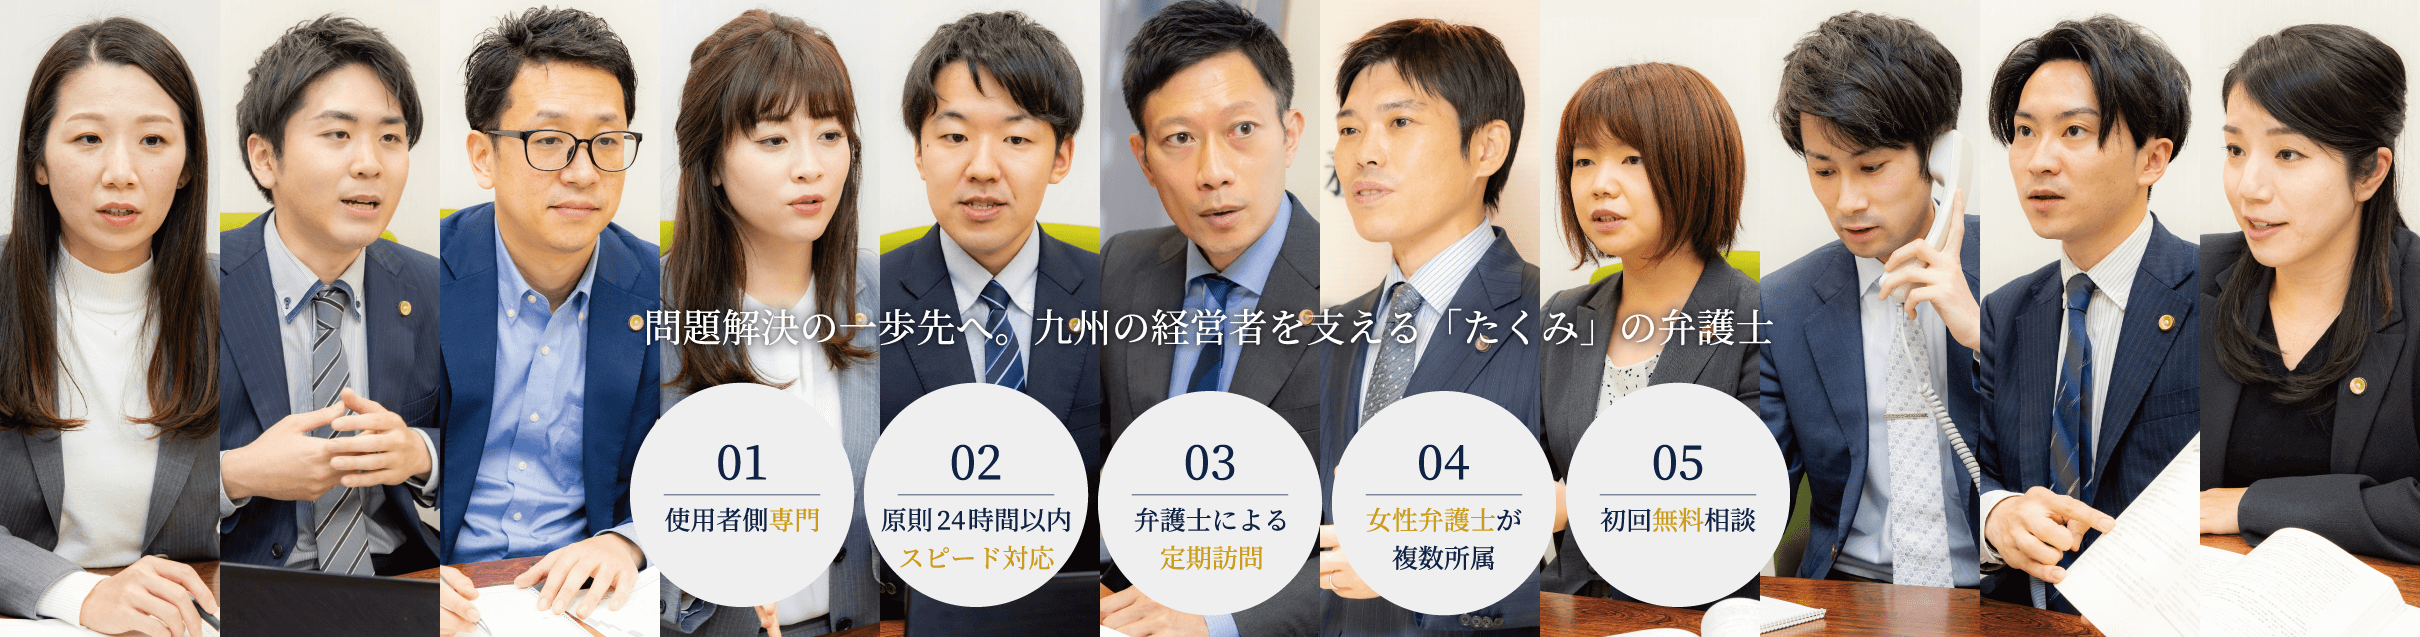 問題解決の一歩先へ。福岡の経営者を支える「たくみ」の弁護士